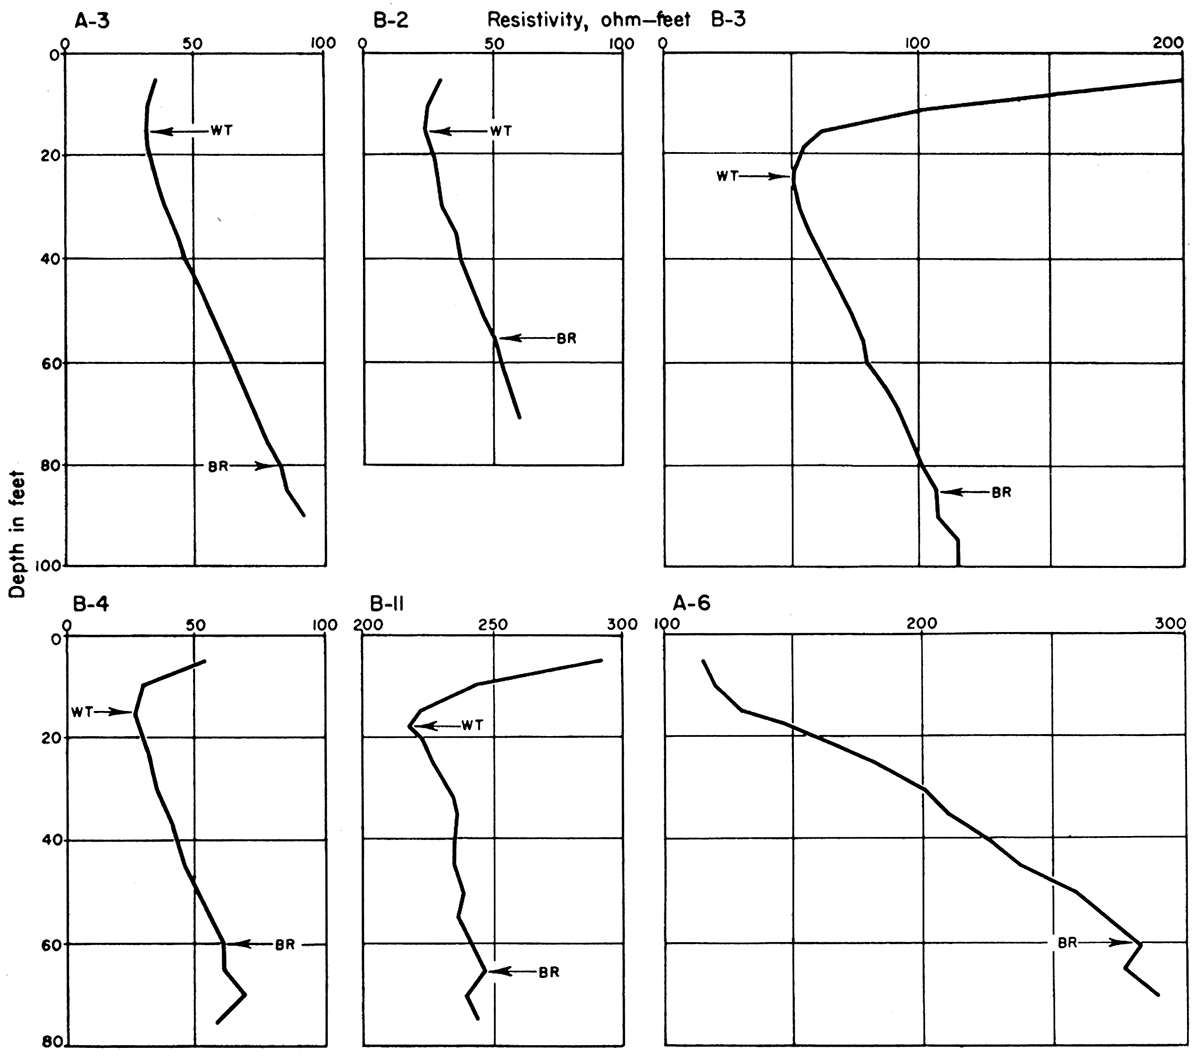 Representative resistivity profiles in the Lawrence-Eudora area.